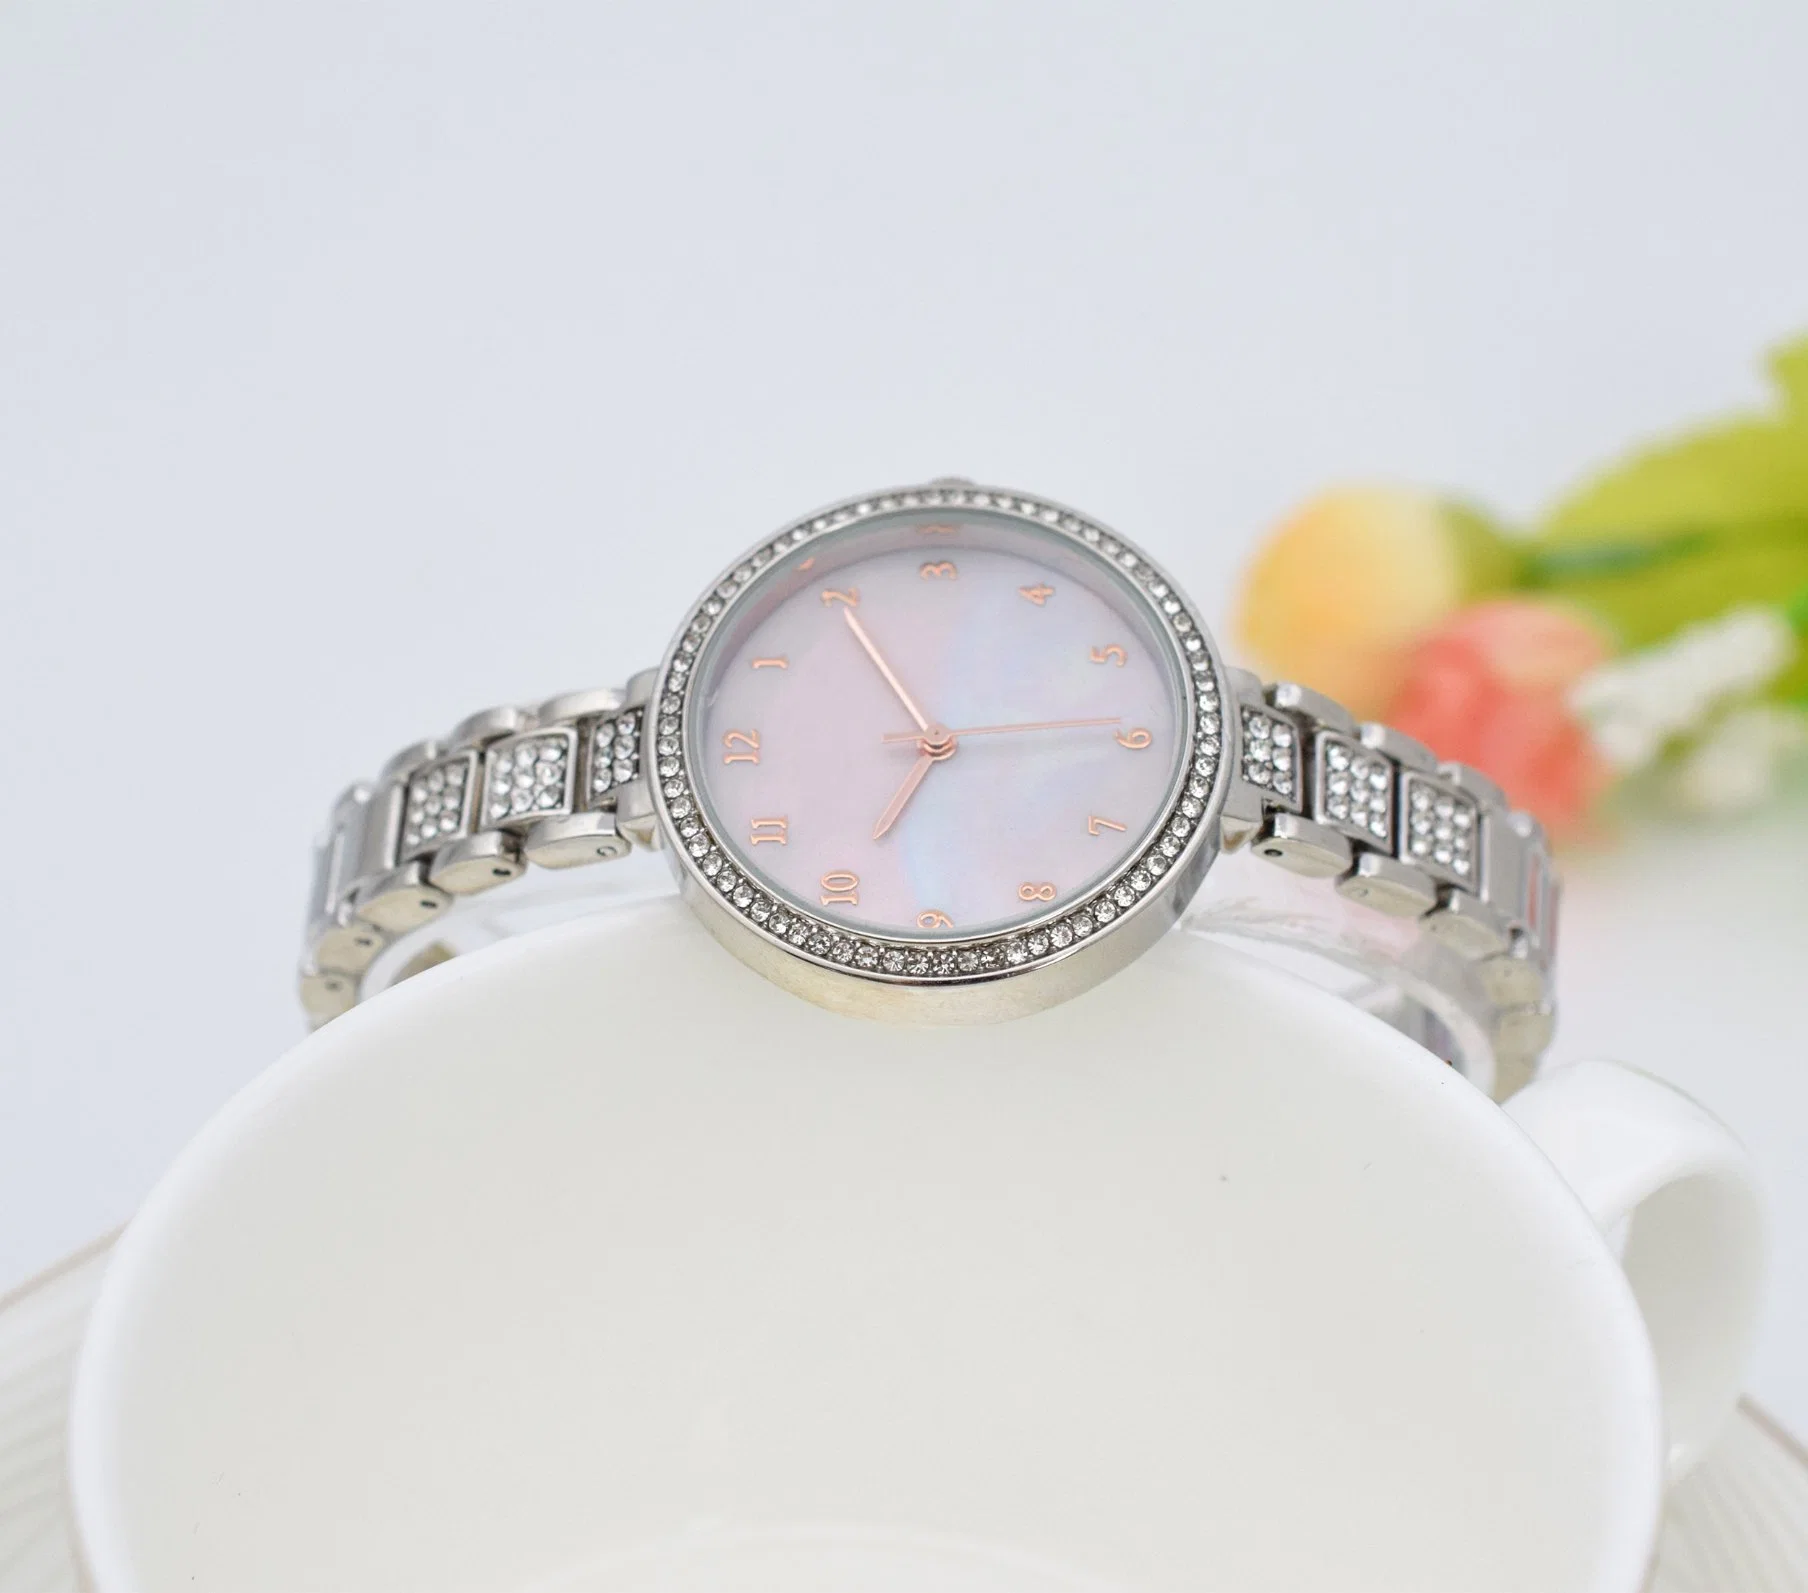 Custom Watch Geschenk Uhr Quarz Watch Fashion Watch Lady Promotional Uhr Alloy Günstige Uhr